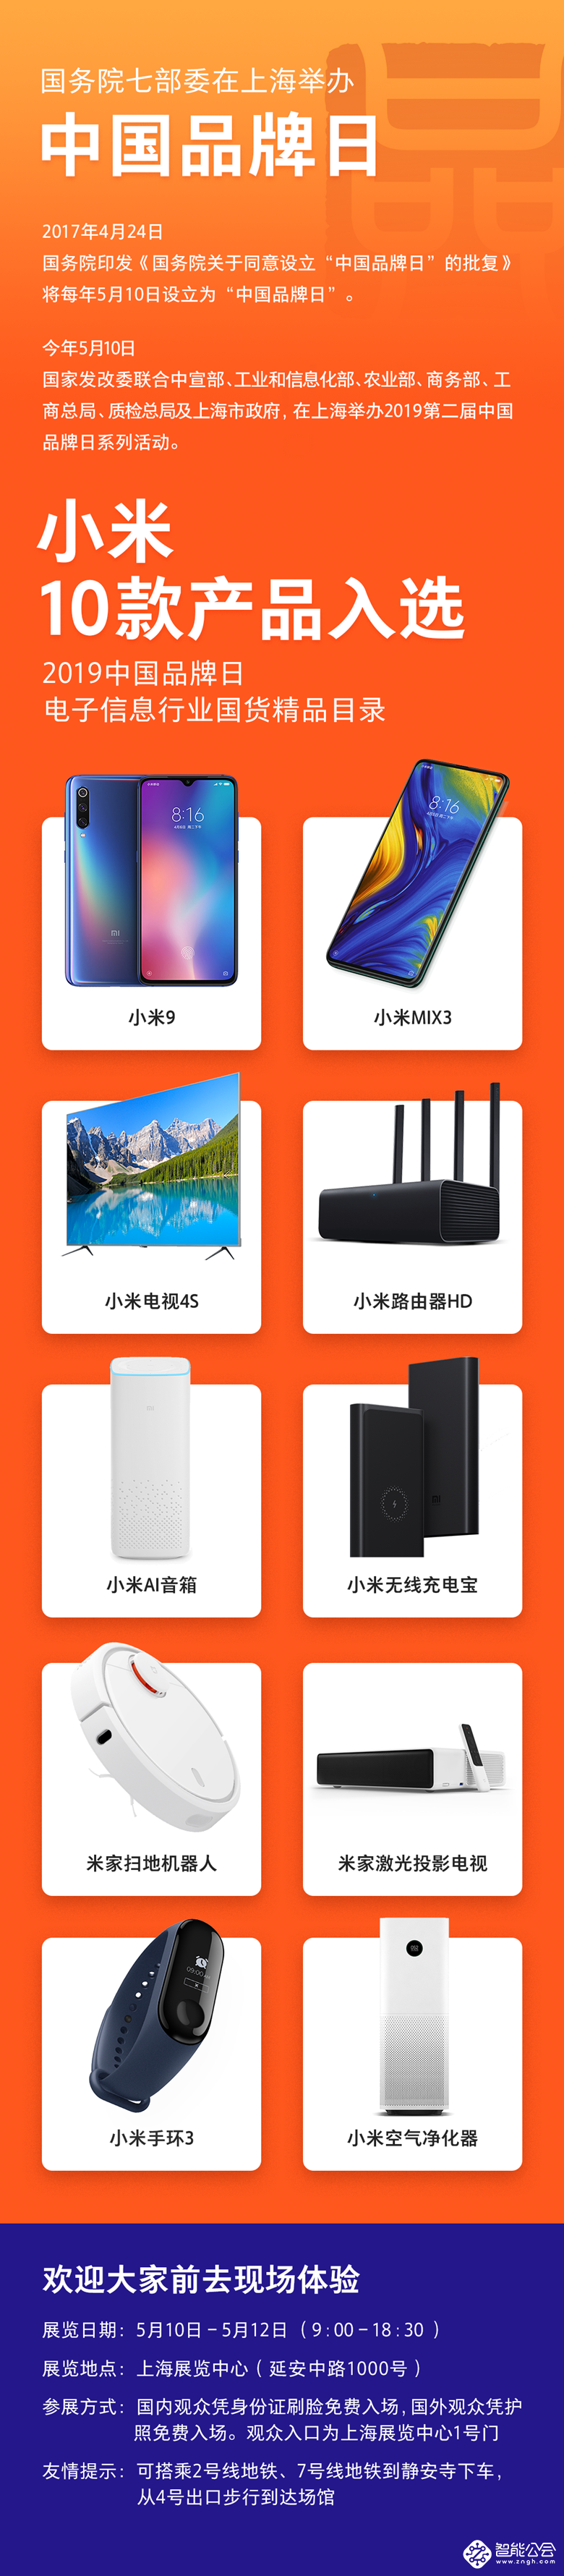 小米10款产品入选“中国品牌日”《国货精品》，为AIoT产品入选最多企业 智能公会